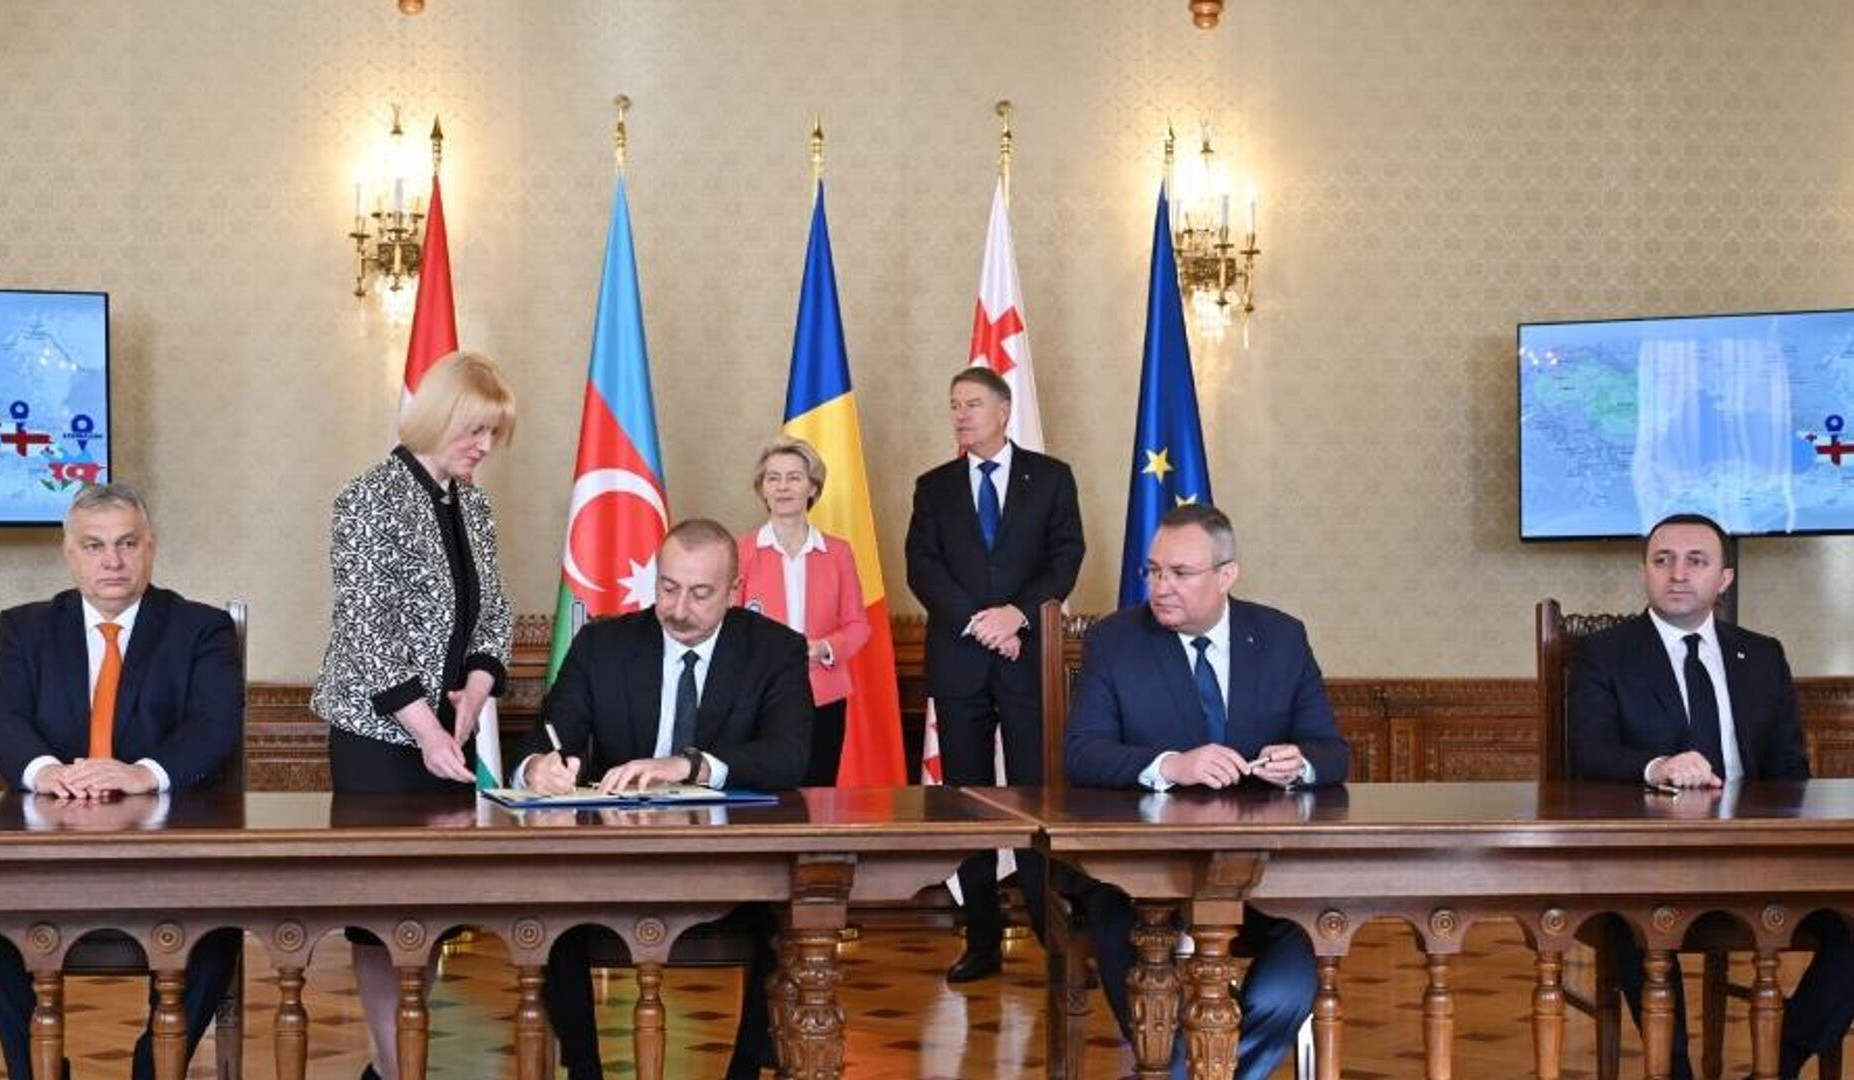 Բուխարեստում համաձայնագիր է ստորագրվել Վրաստանի տարածքով Ադրբեջանից Եվրոպա էլեկտրաէներգիայի տեղափոխման մասին